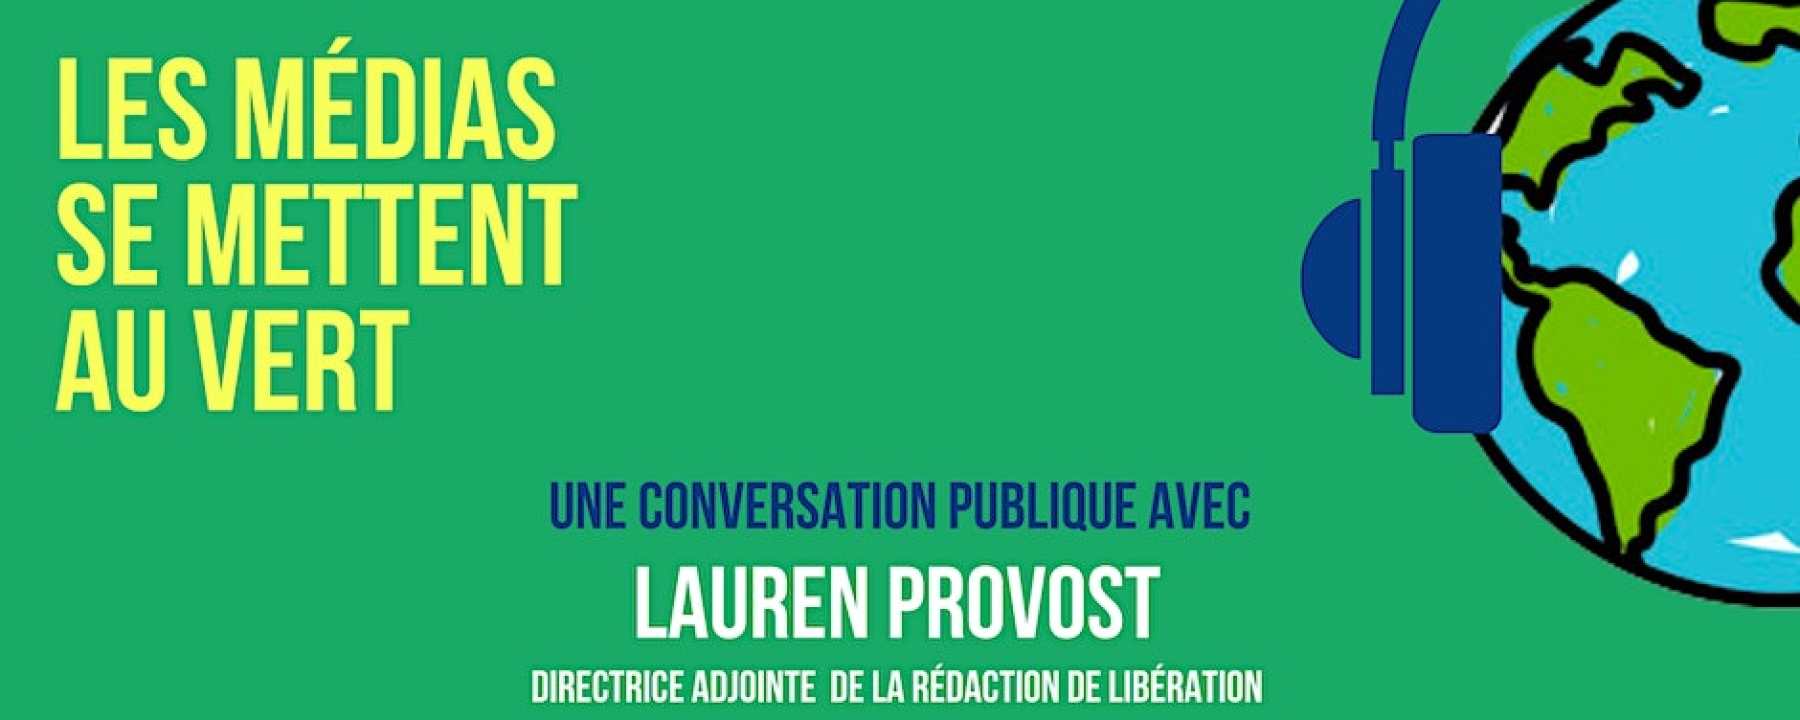 Les médias se mettent au vert - Conversation publique avec Lauren Provost